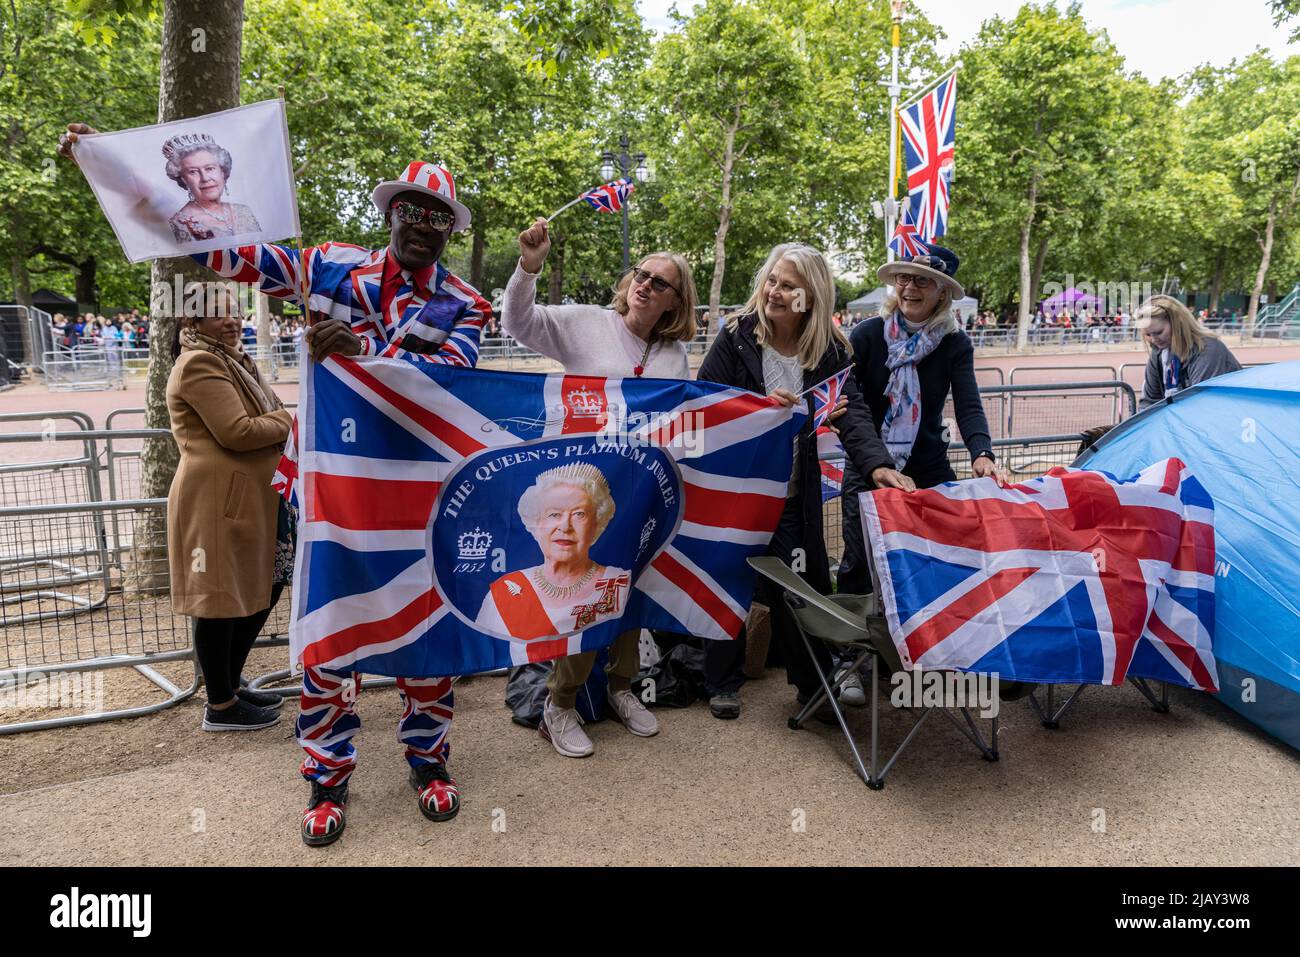 Royal-Fans warten in der Mall auf die Feierlichkeiten zum Platin-Jubiläum, London, England, Großbritannien Stockfoto